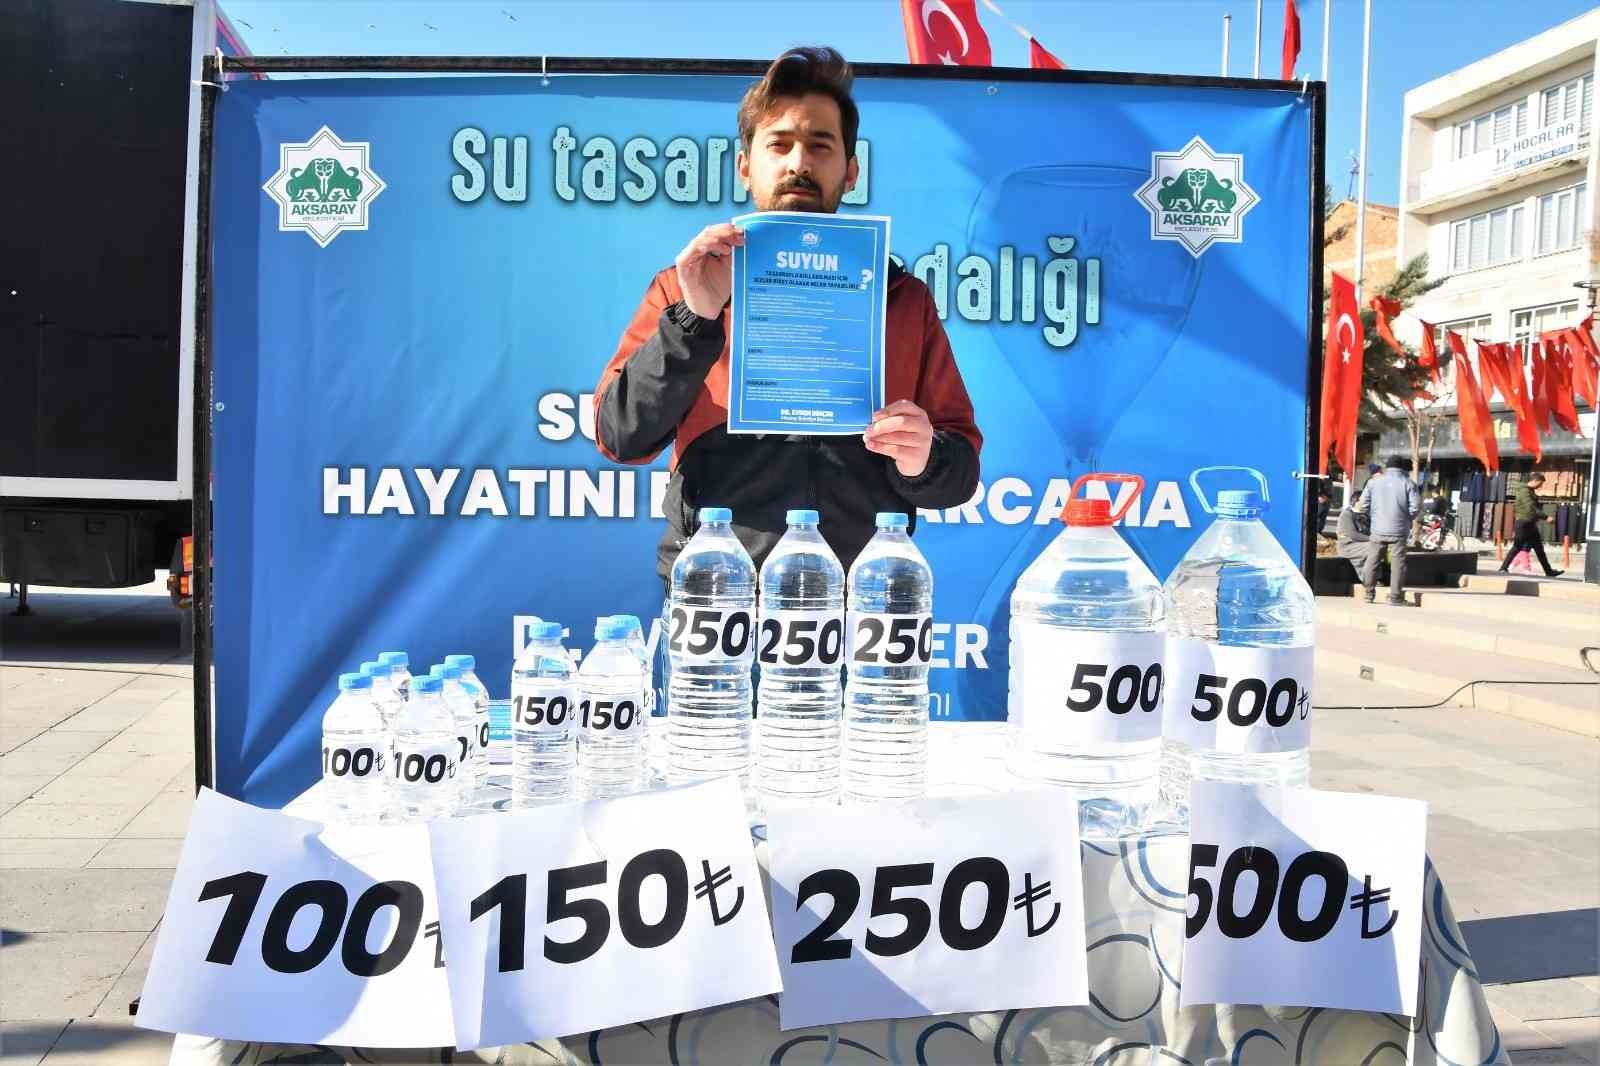 Kuraklık vurdu, 5 litrelik su 500 TL’den satışa çıktı #aksaray